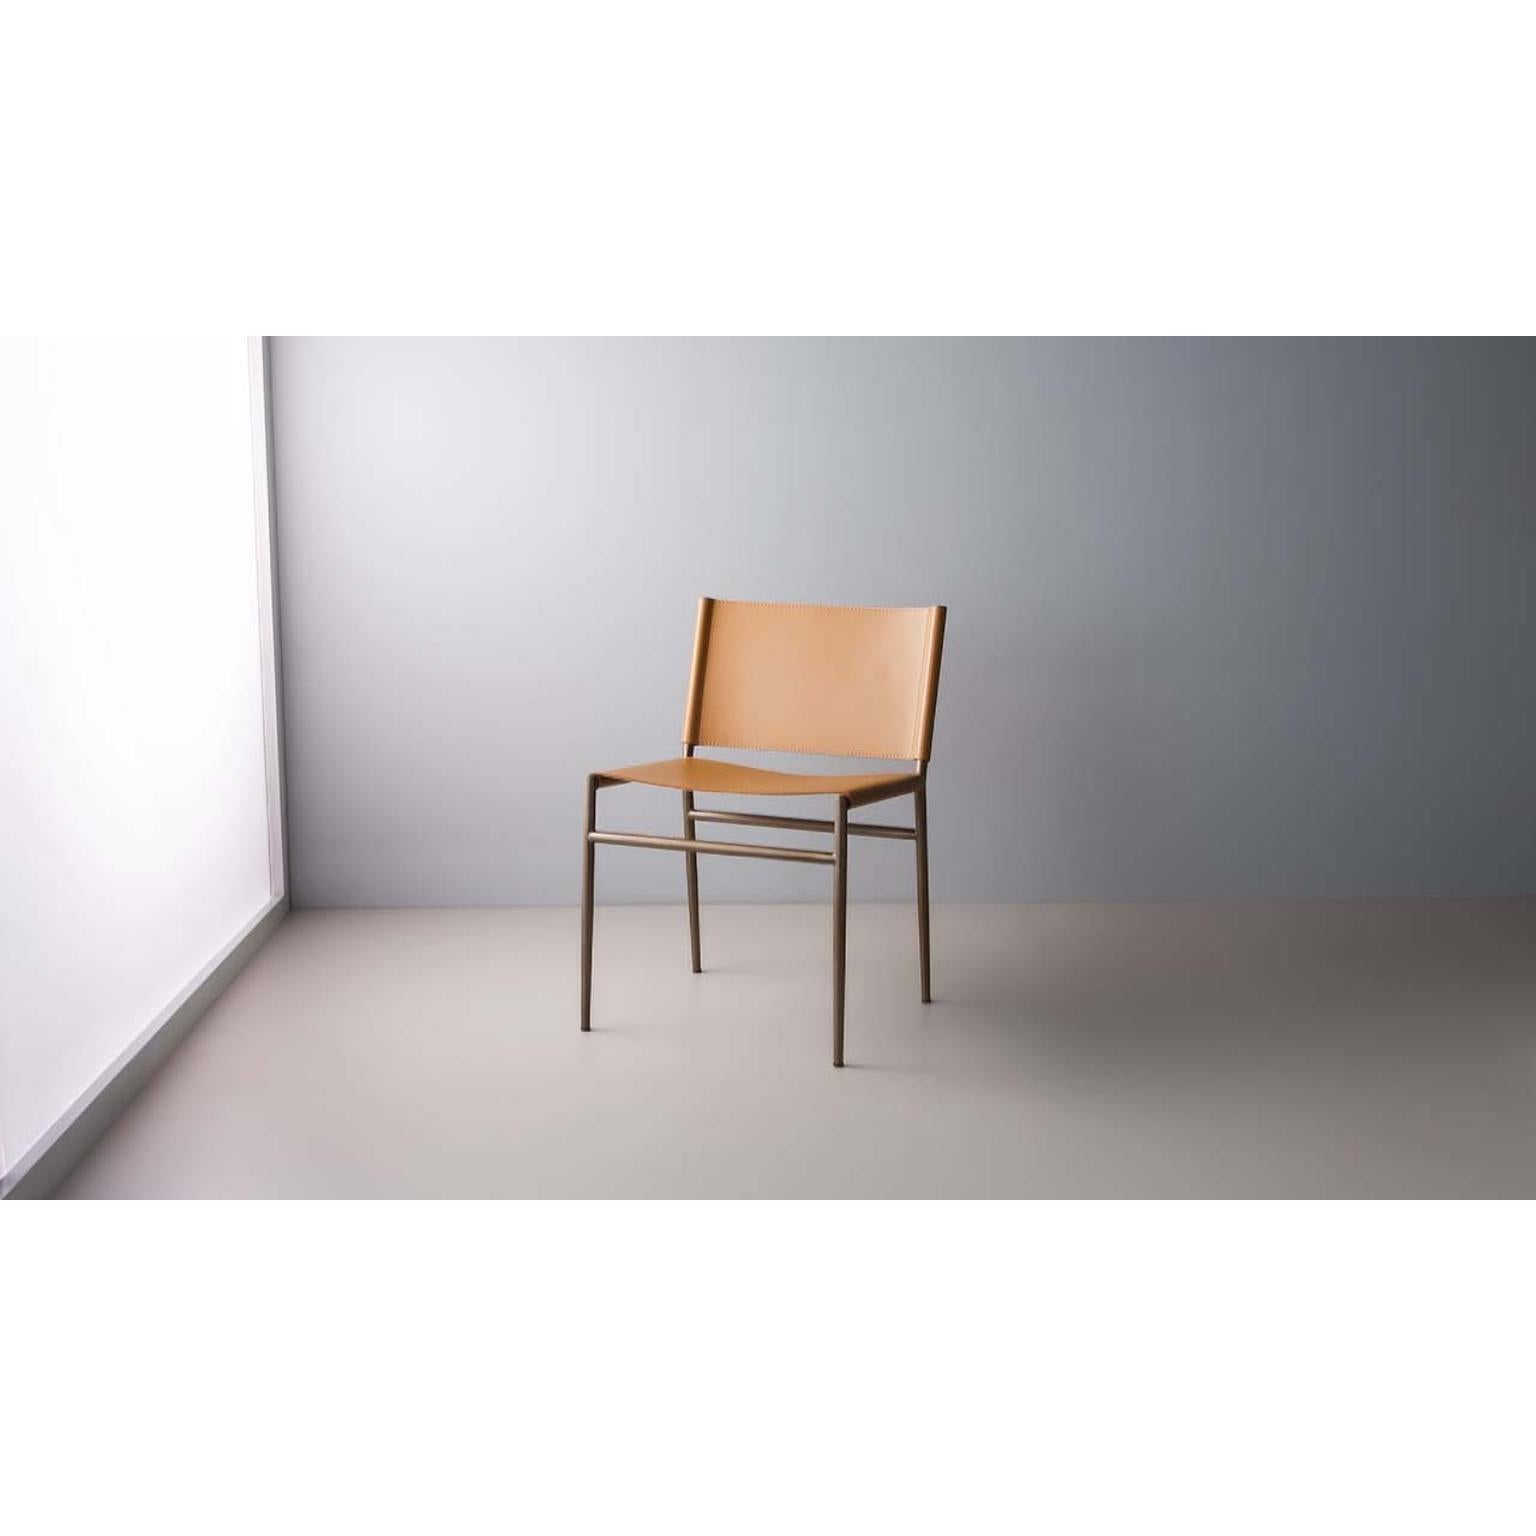 Nit-Stuhl von Doimo Brasil
Abmessungen: B 53 x T 56 x H 76 cm 
MATERIALIEN: Metall, Sitz gepolstert. 


Mit der Absicht, guten Geschmack und Persönlichkeit zu vermitteln, entschlüsselt Doimo Trends und folgt der Entwicklung des Menschen und seines